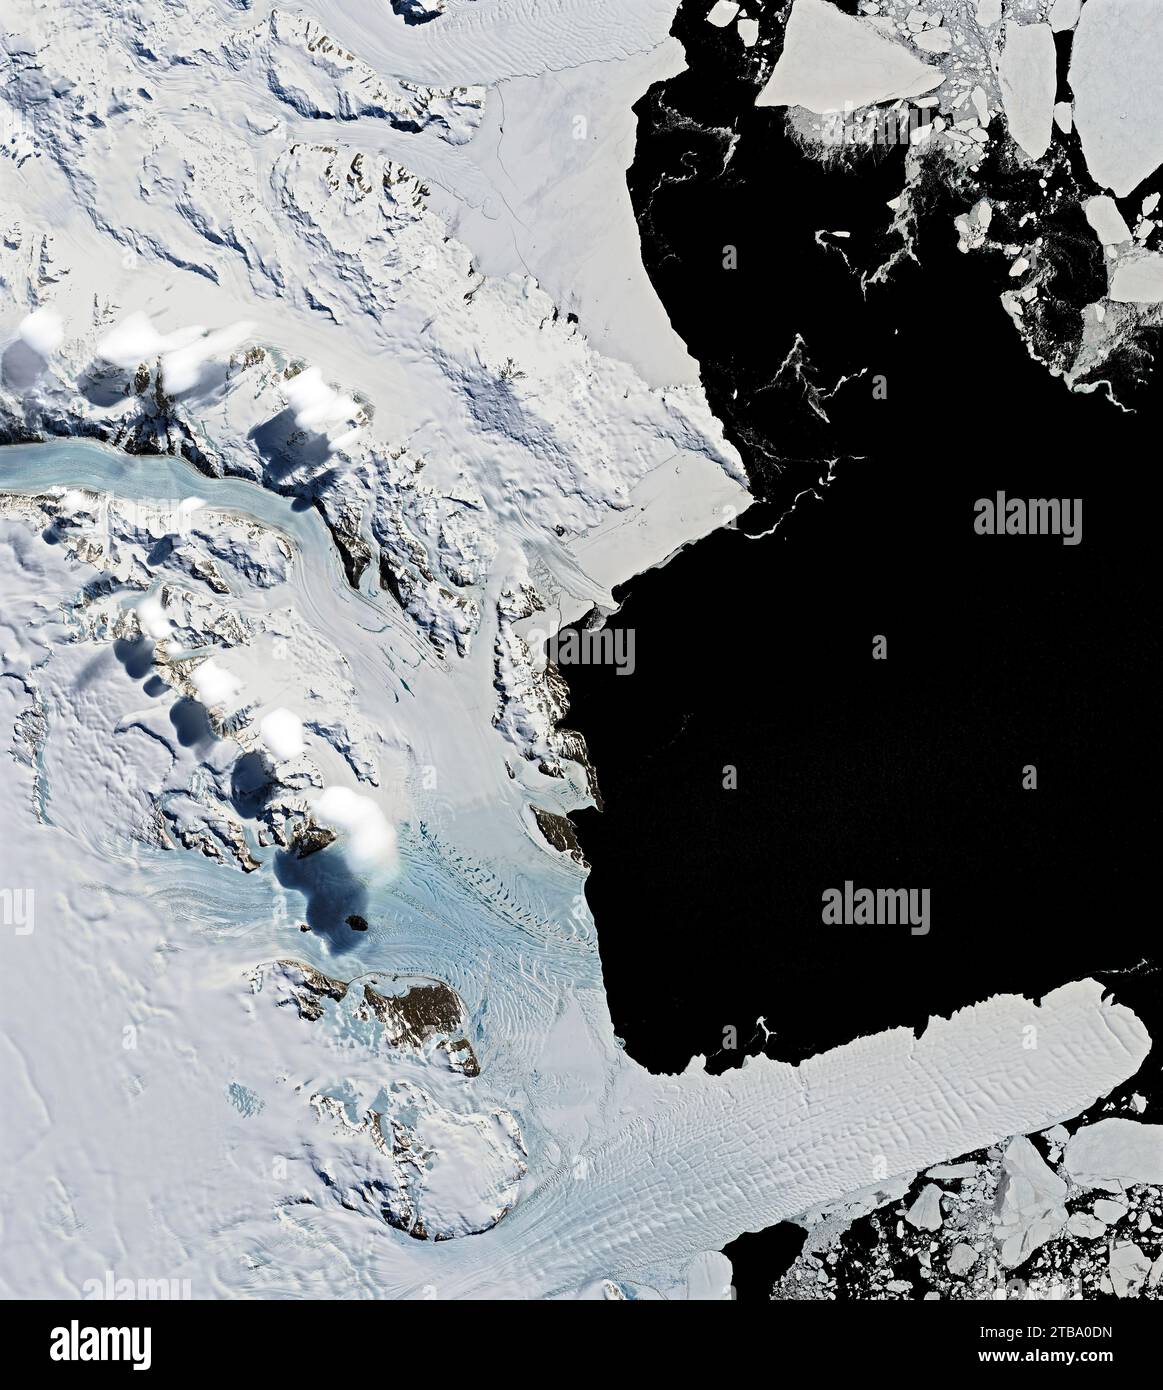 Satellitenansicht der Eisenhower Range der antarktischen Transantarktis. Stockfoto